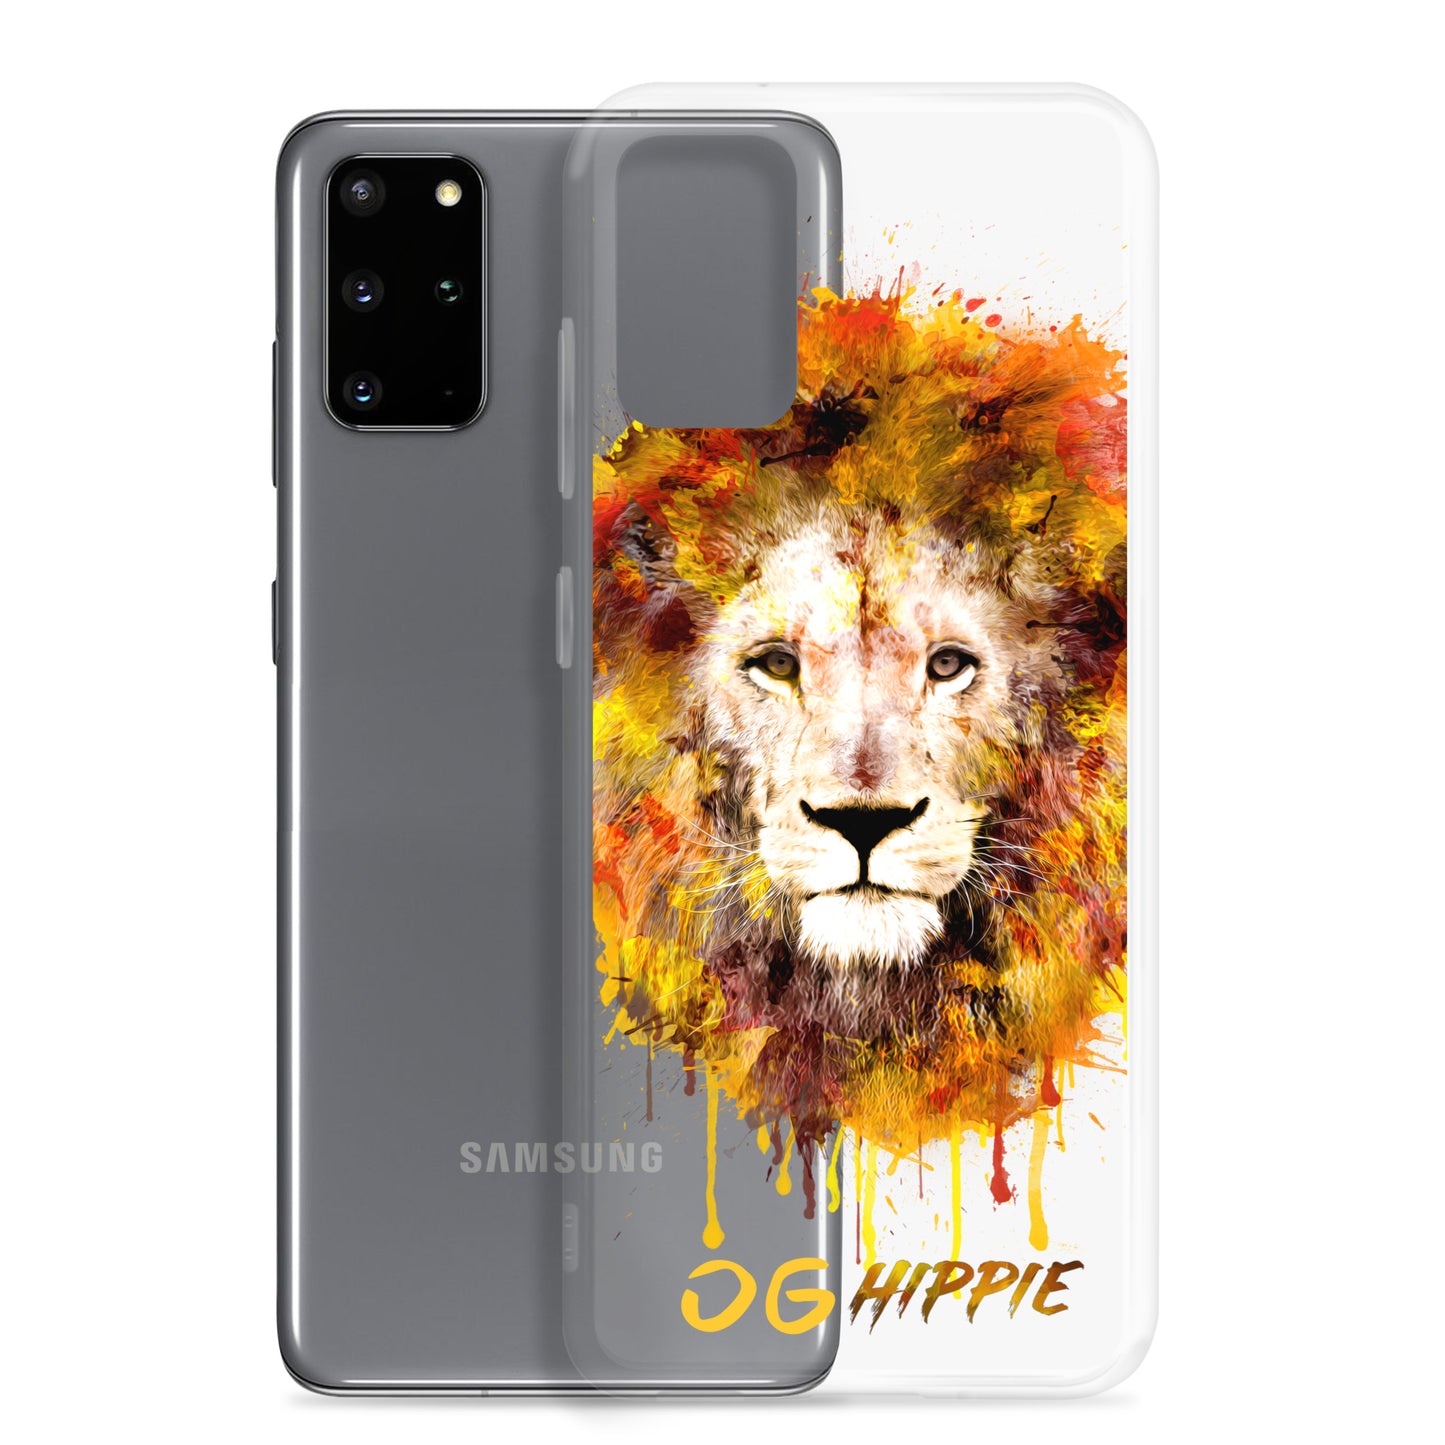 Coque Samsung transparente - OG Hippie (jaune)